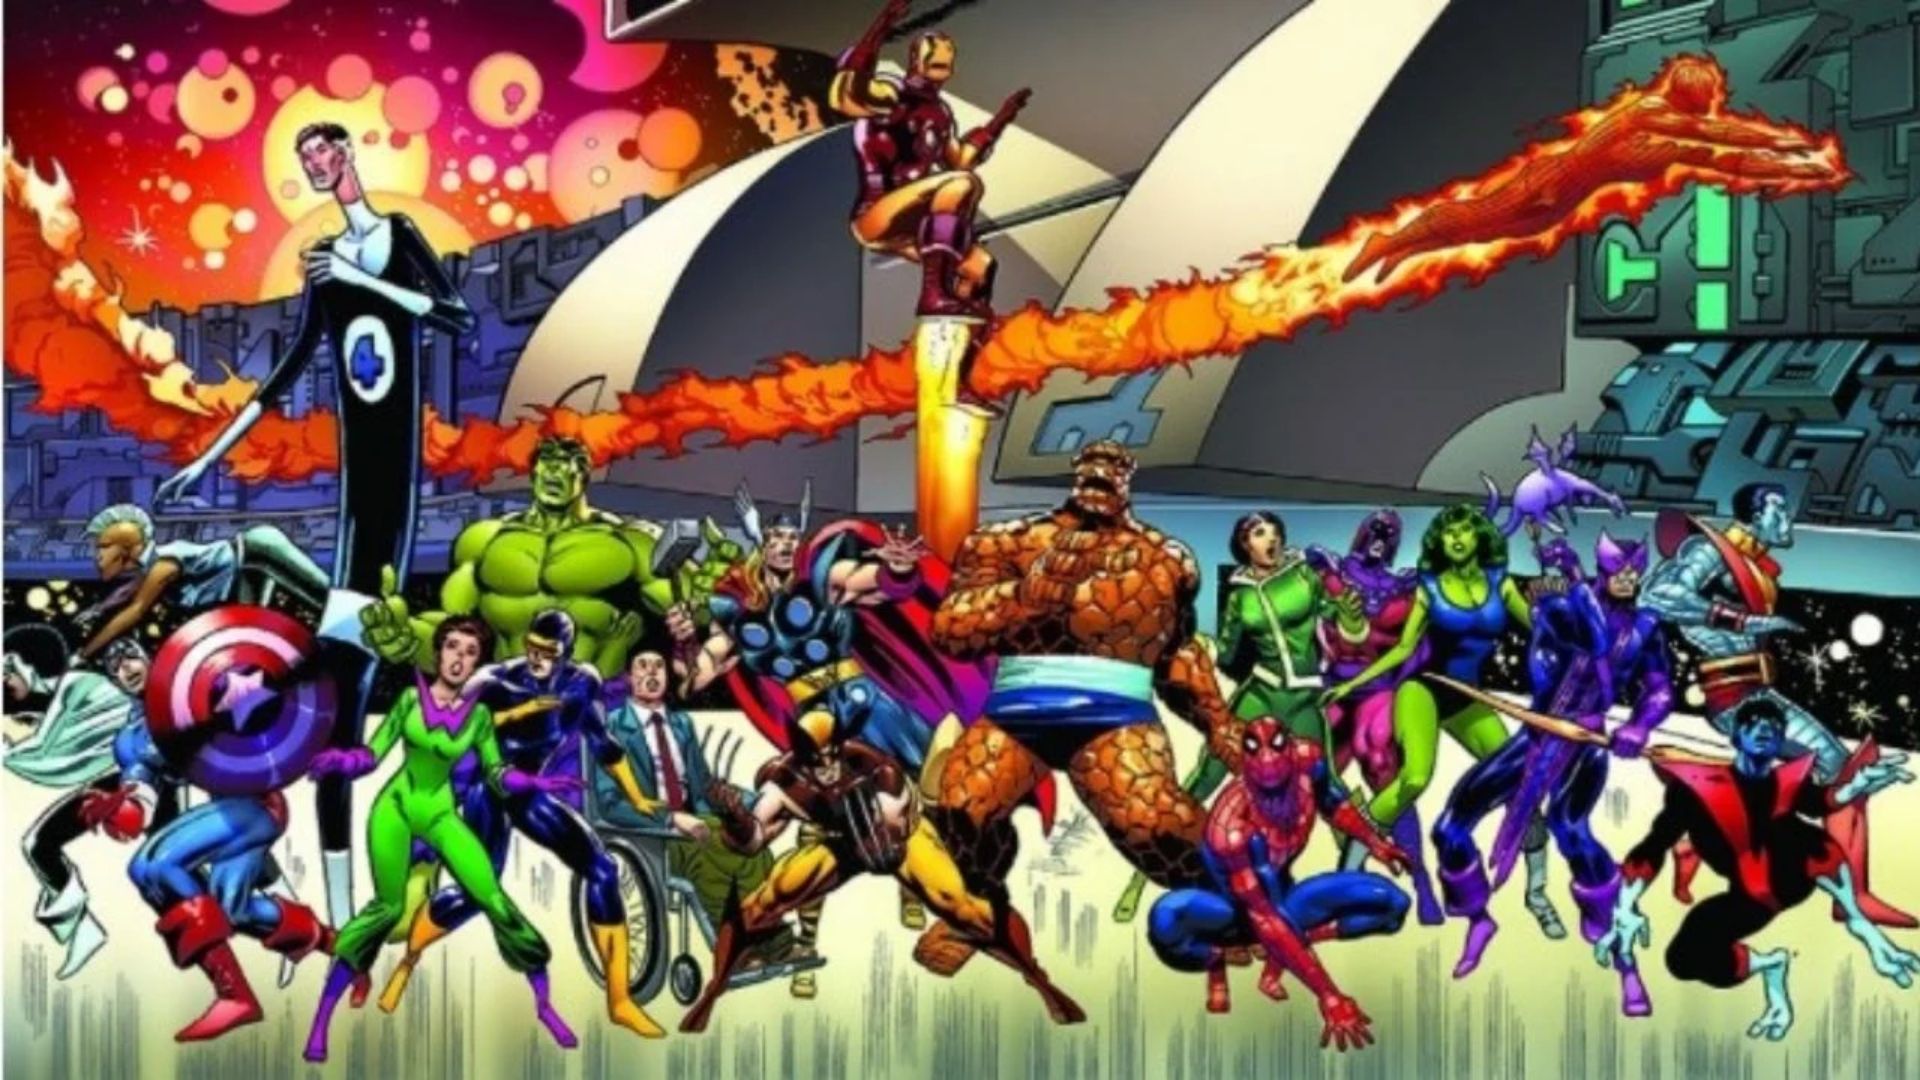 Vingadores: Guerras Secretas, previsto para estrear em 2017, será responsável por encerrar a Saga do Multiverso (Foto: Reprodução/Marvel Comics)